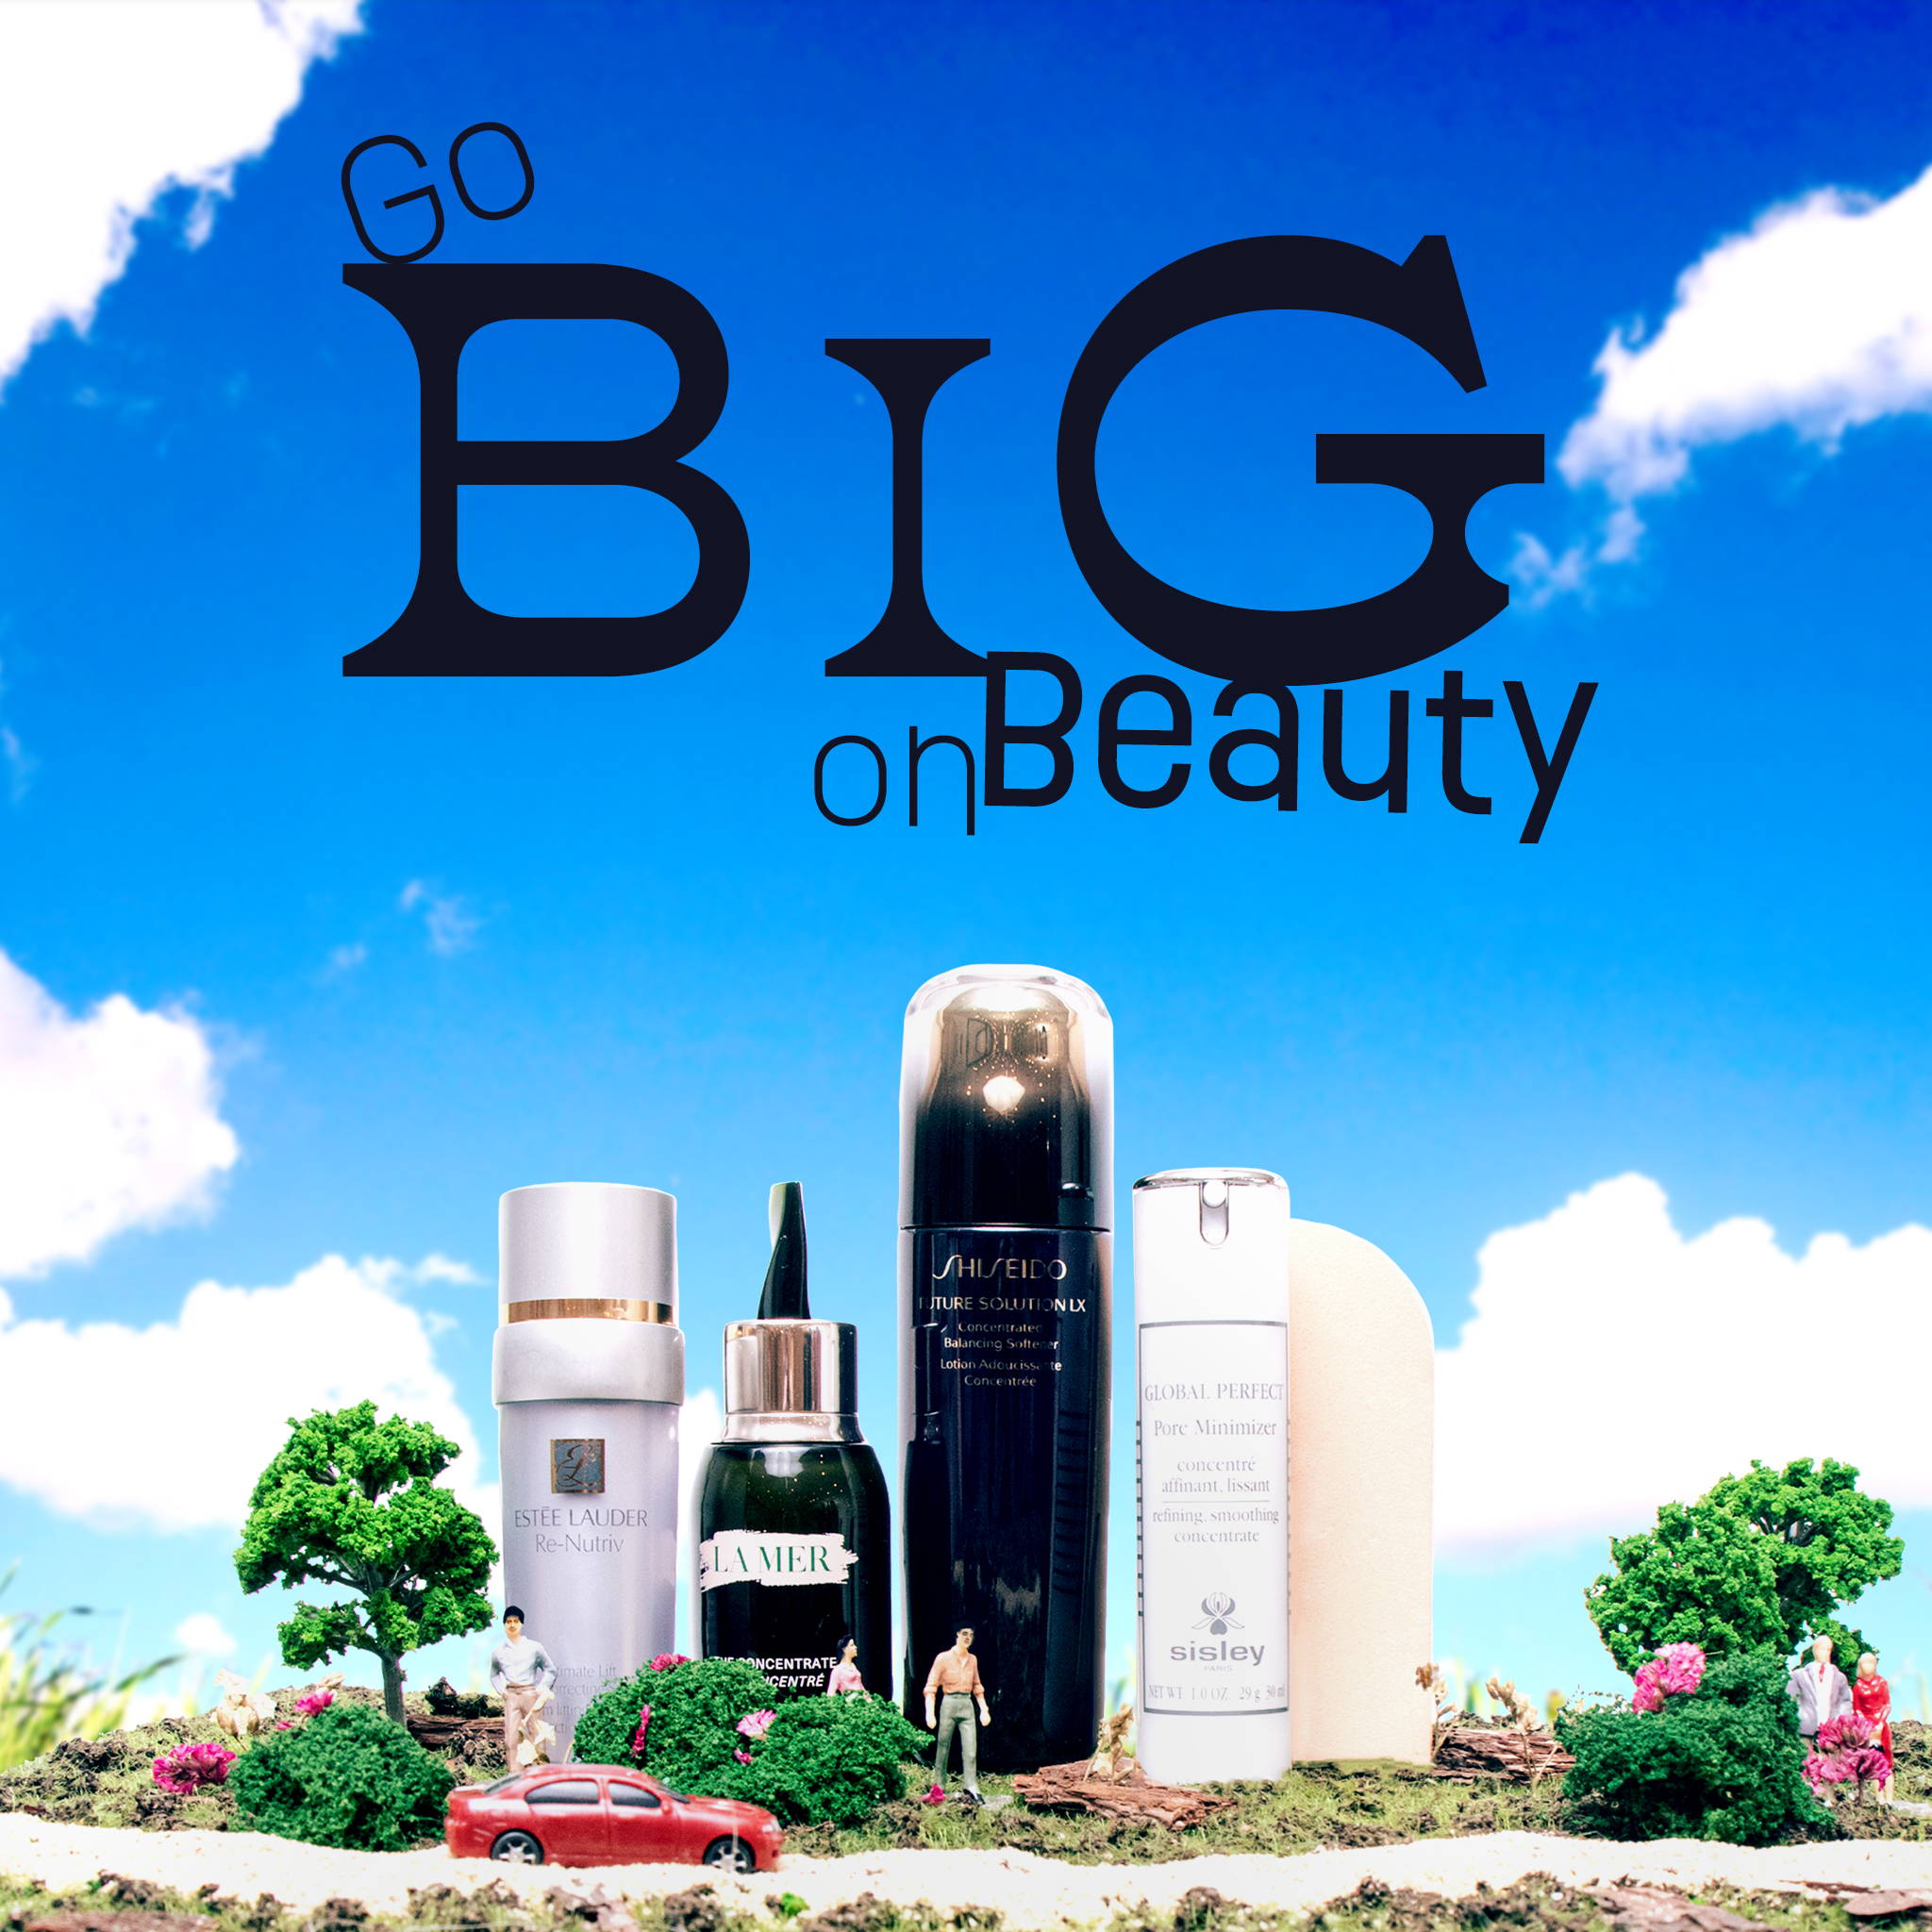 Go Big On Beauty - Rustans.com